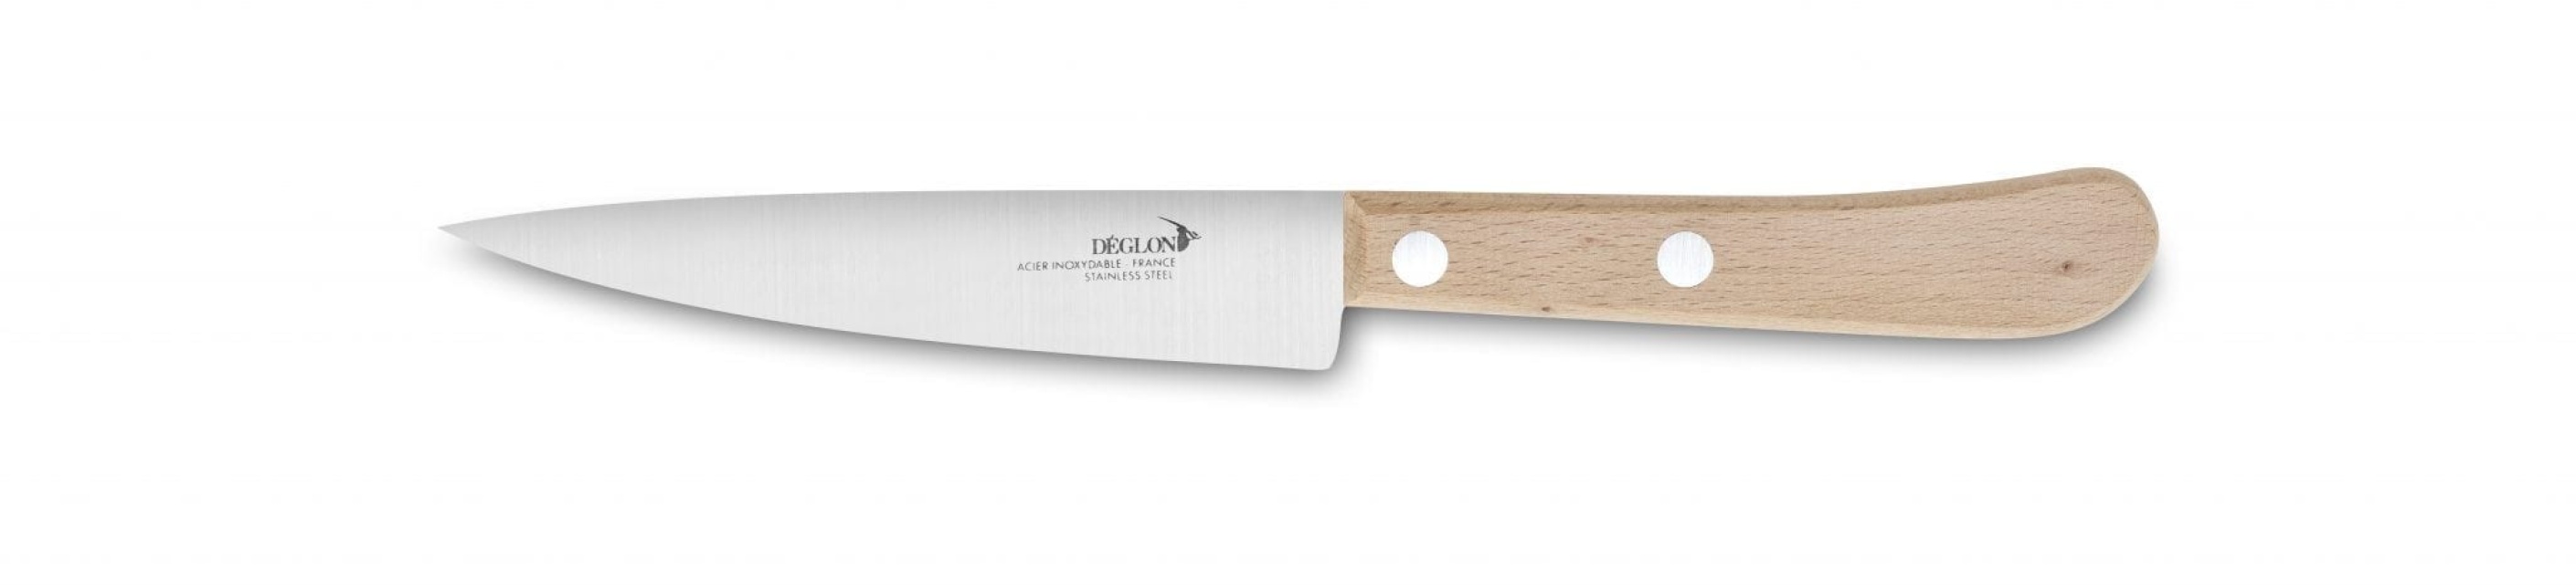 Chef's knife, 14 cm - Déglon